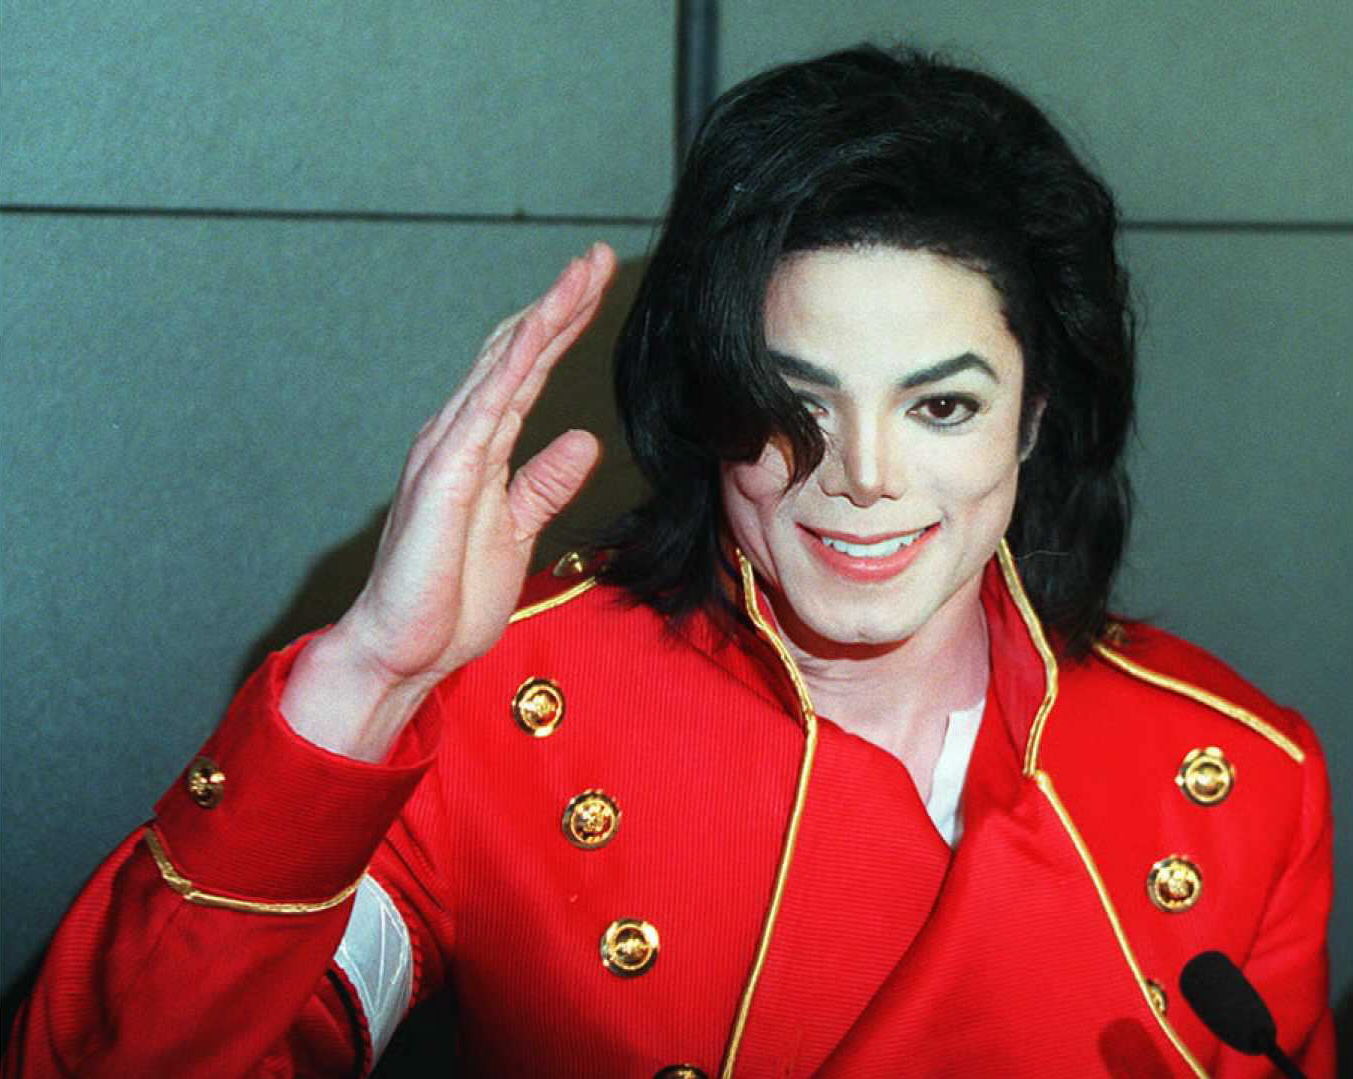 Louis Vuitton le dice adiós a su colección inspirada en Michael Jackson